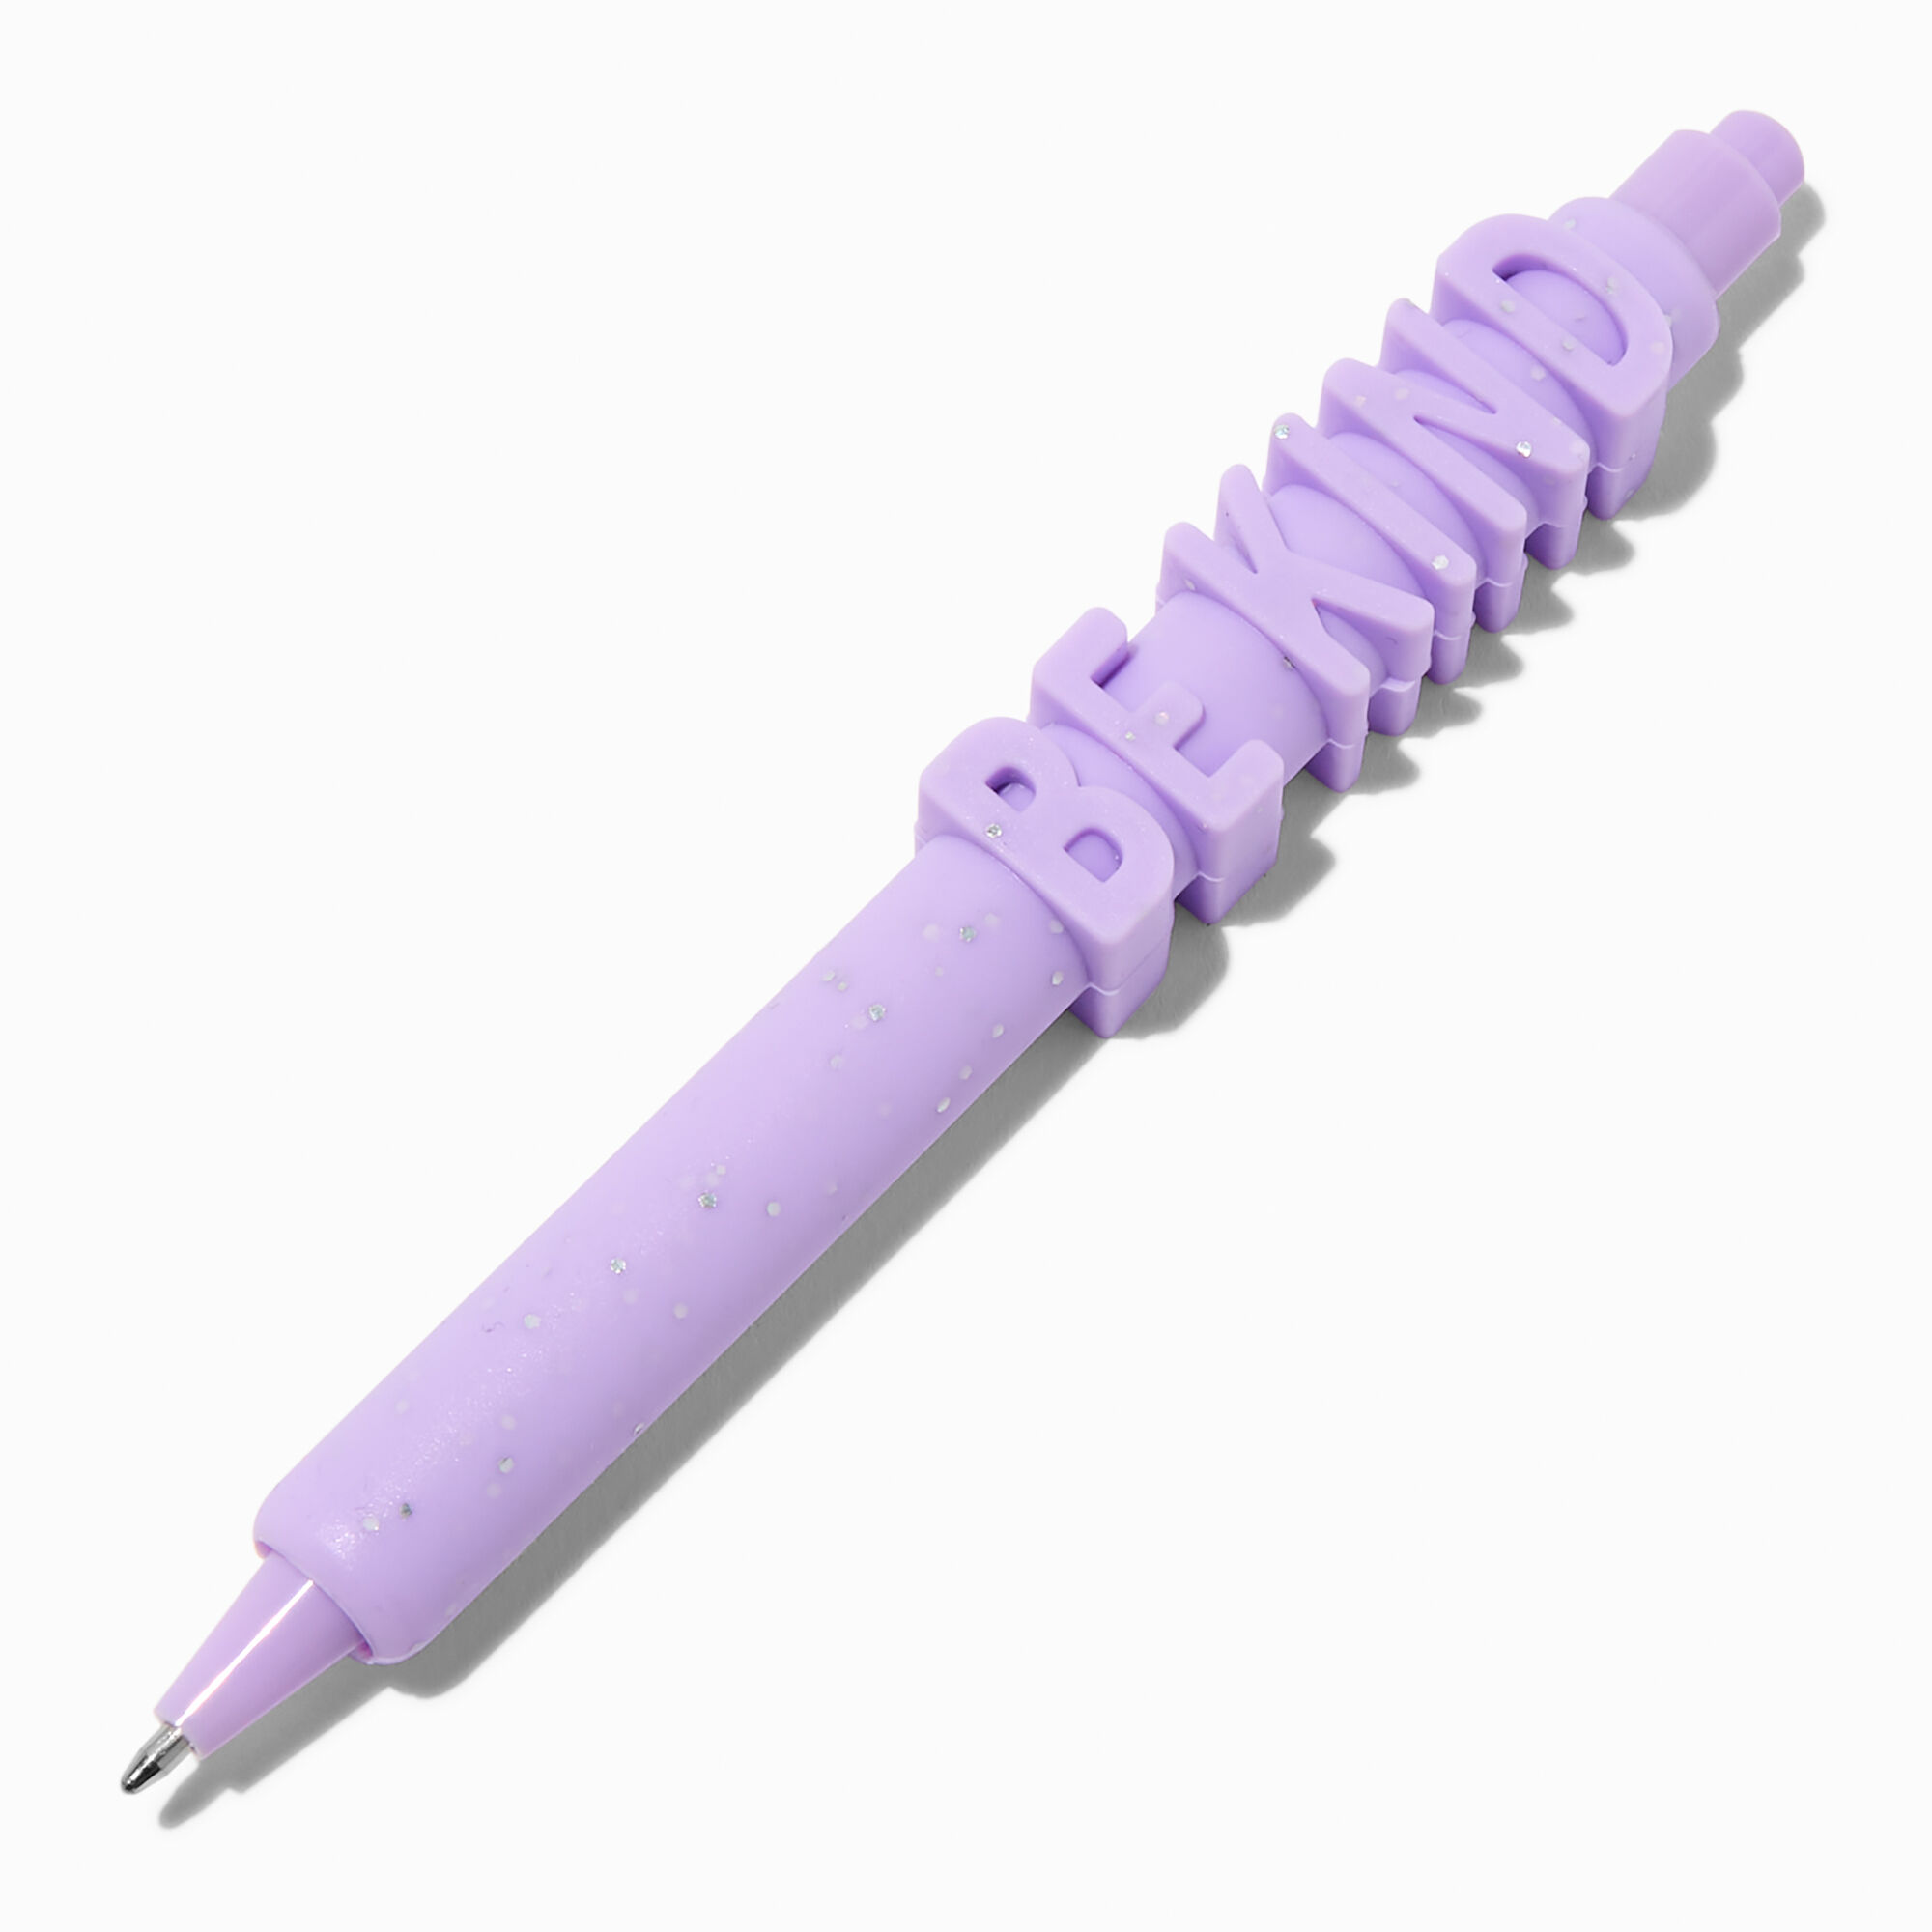 View Claires be Kind 3D Pen Purple information